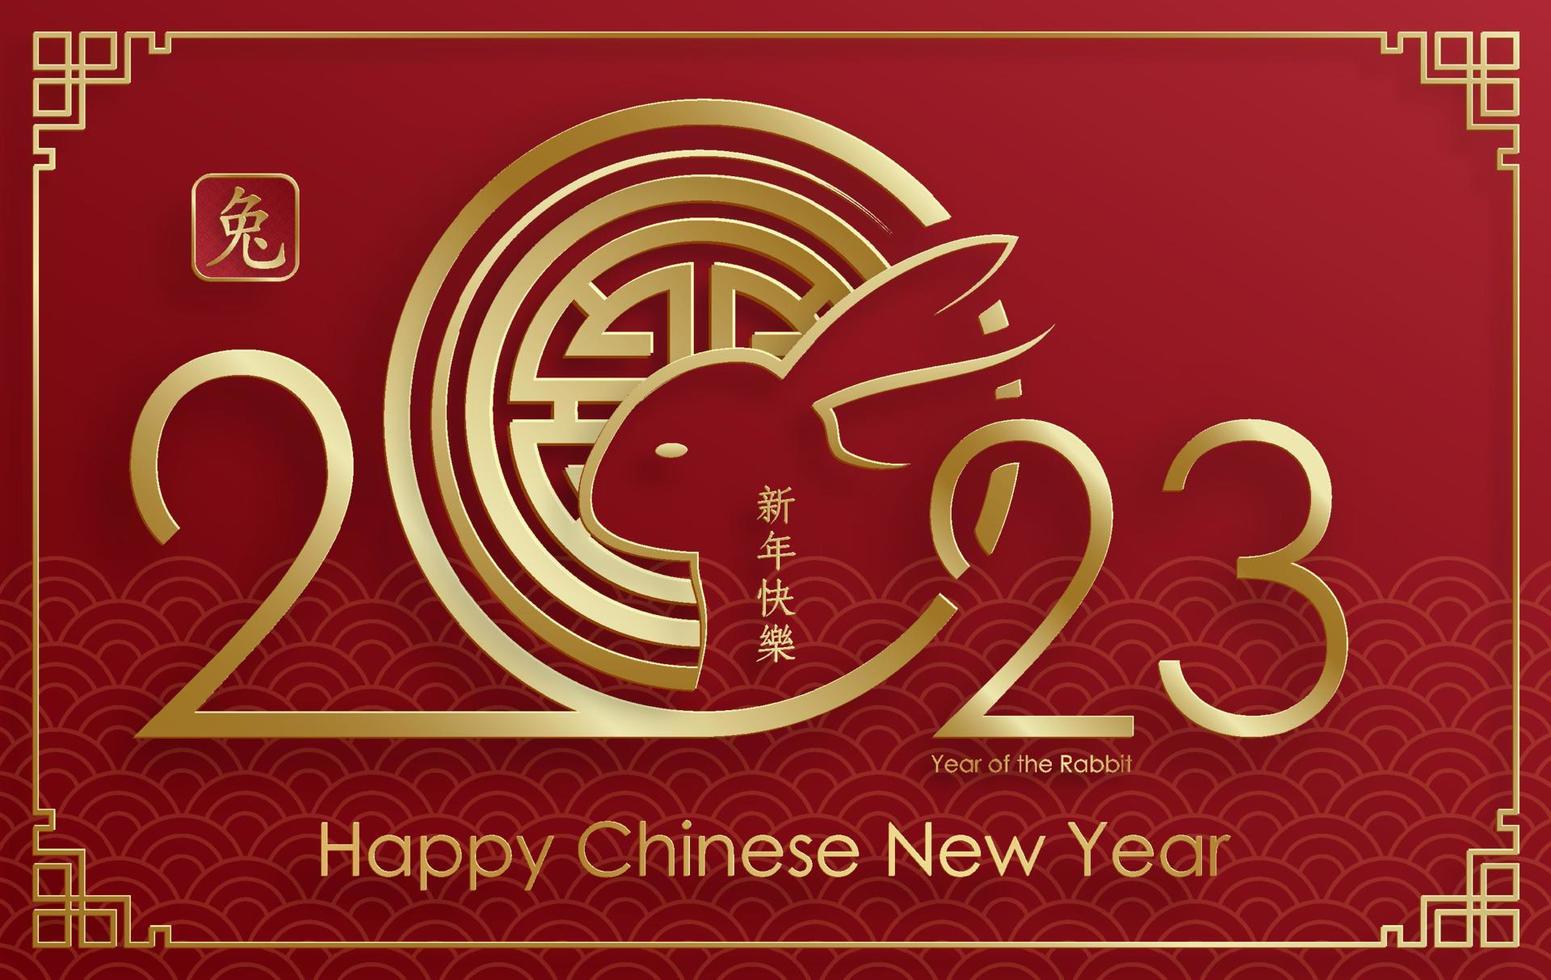 felice anno nuovo cinese 2023 segno zodiacale del coniglio per l'anno del coniglio vettore